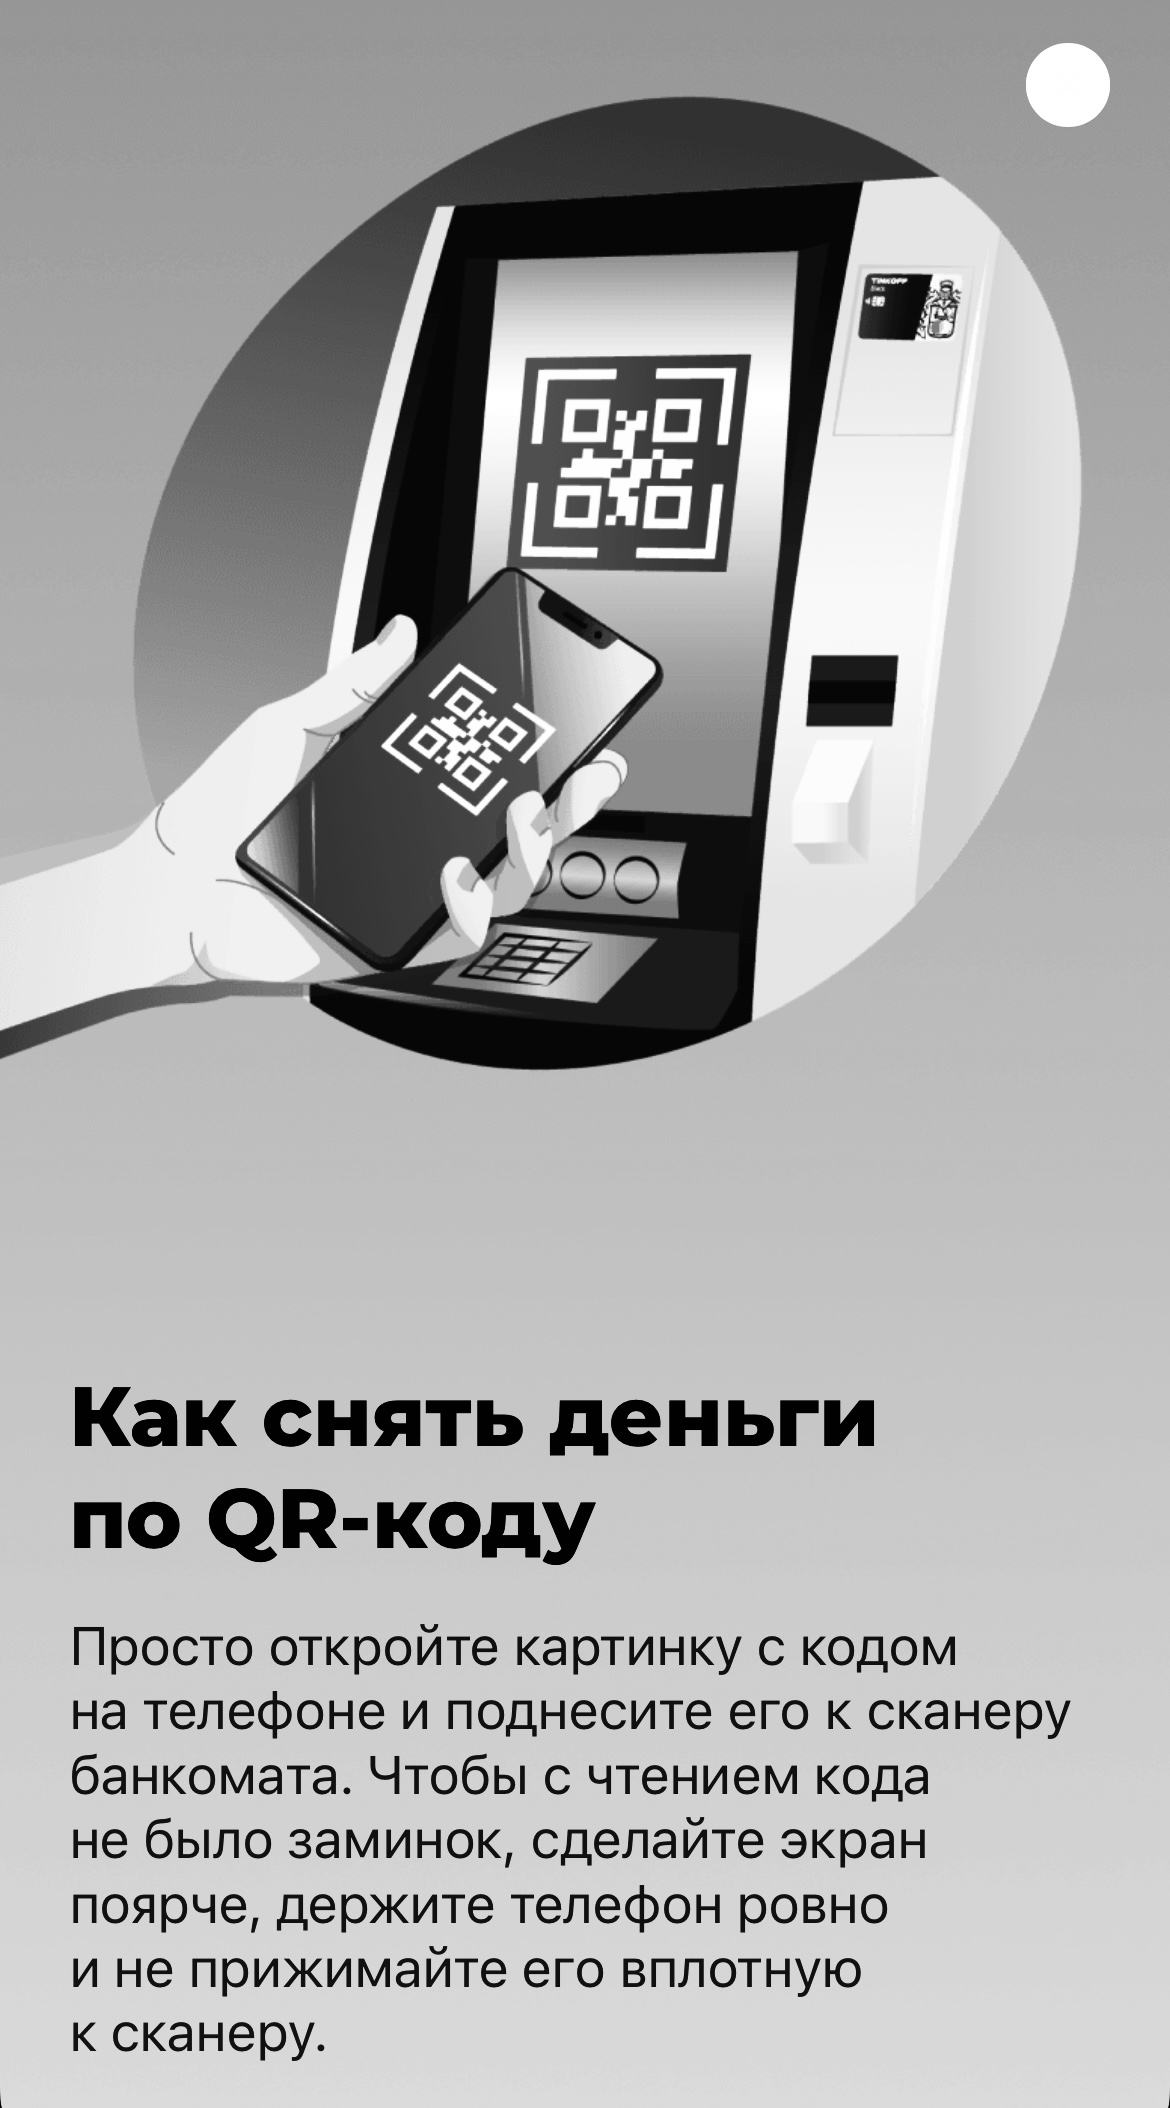 Снятие наличных qr. Сканер банкомата тинькофф. Банкомат тинькофф QR код. Считыватель QR кодов. Сканировать QR код.